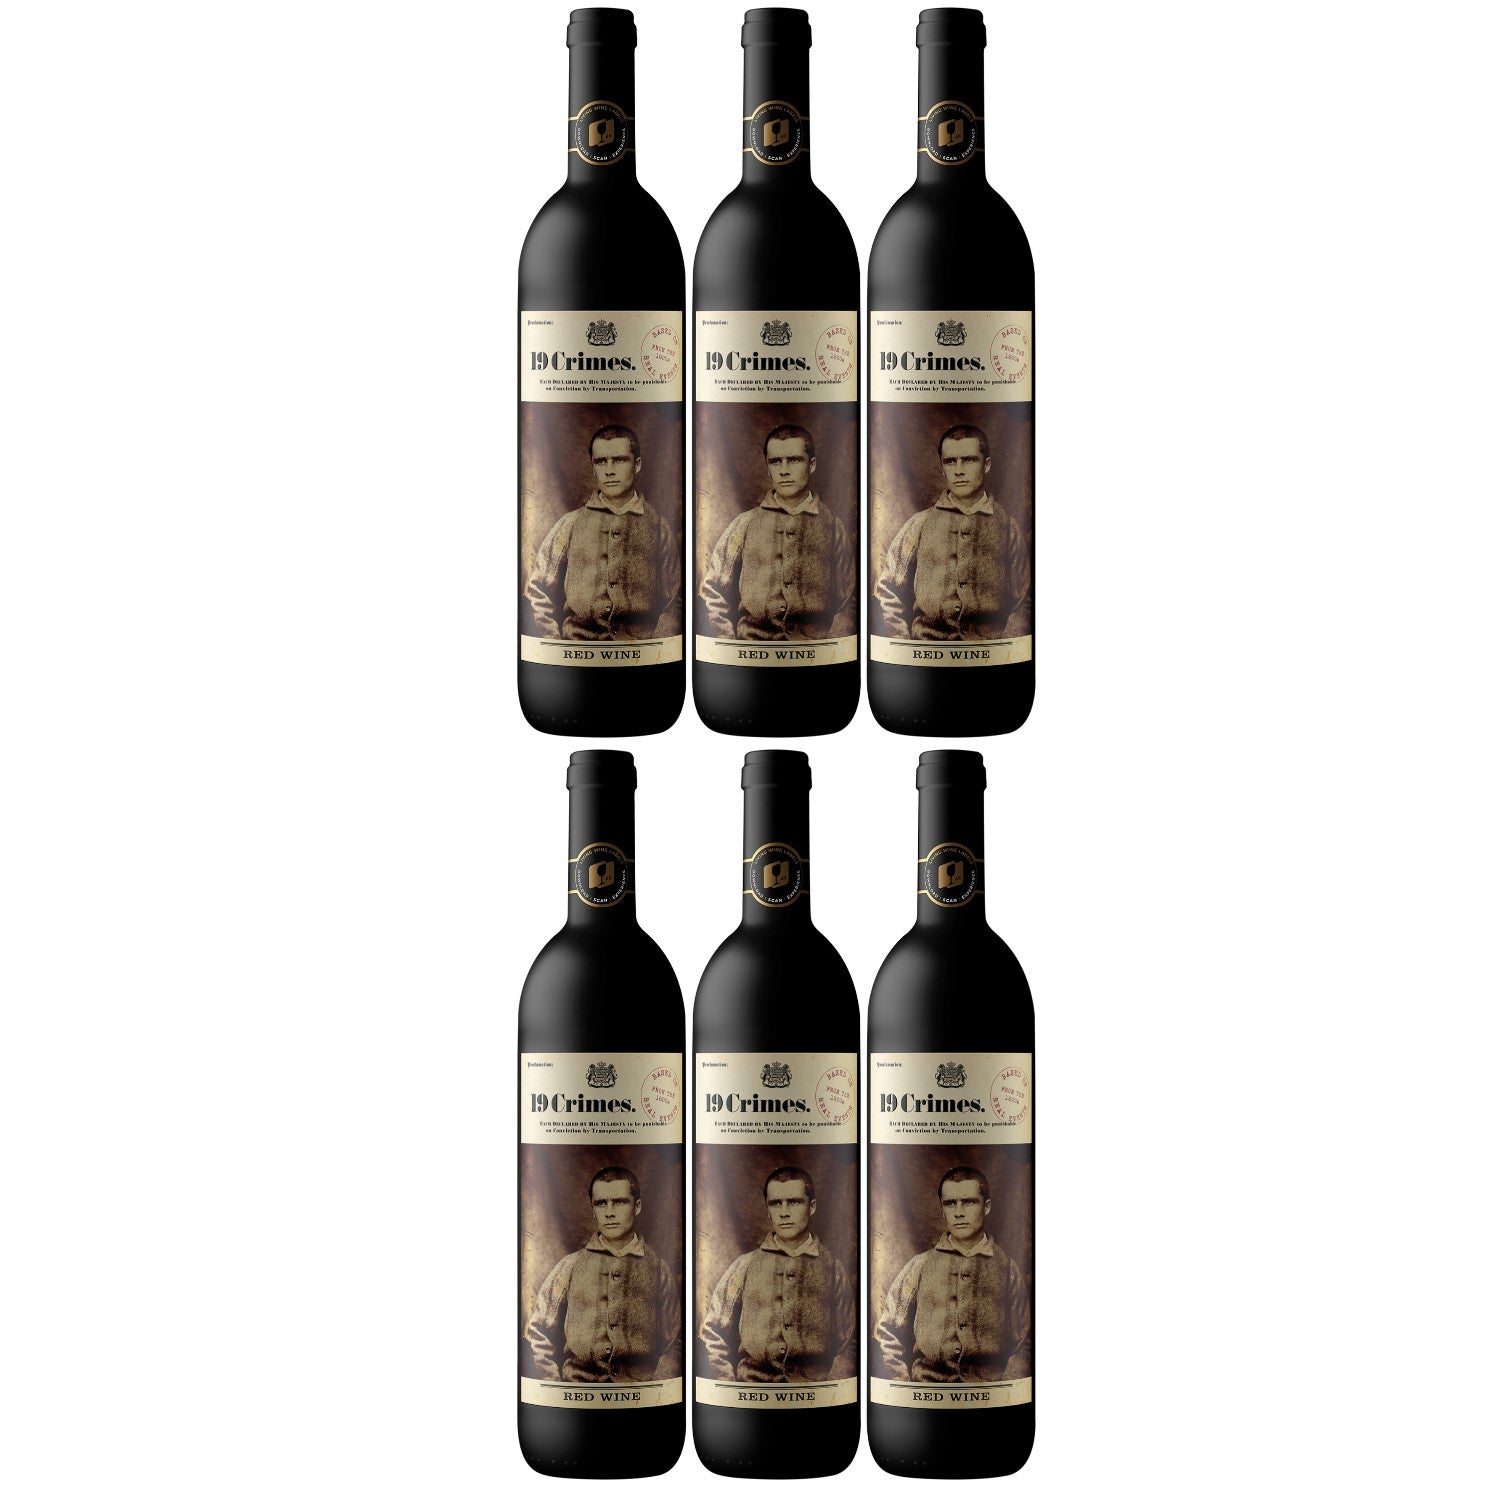 19 Crimes Red Blend Cabernet Sauvignon Merlot Shiraz Rotwein Wein Trocken Australien (6 x 0.75l) - Versanel - Wein